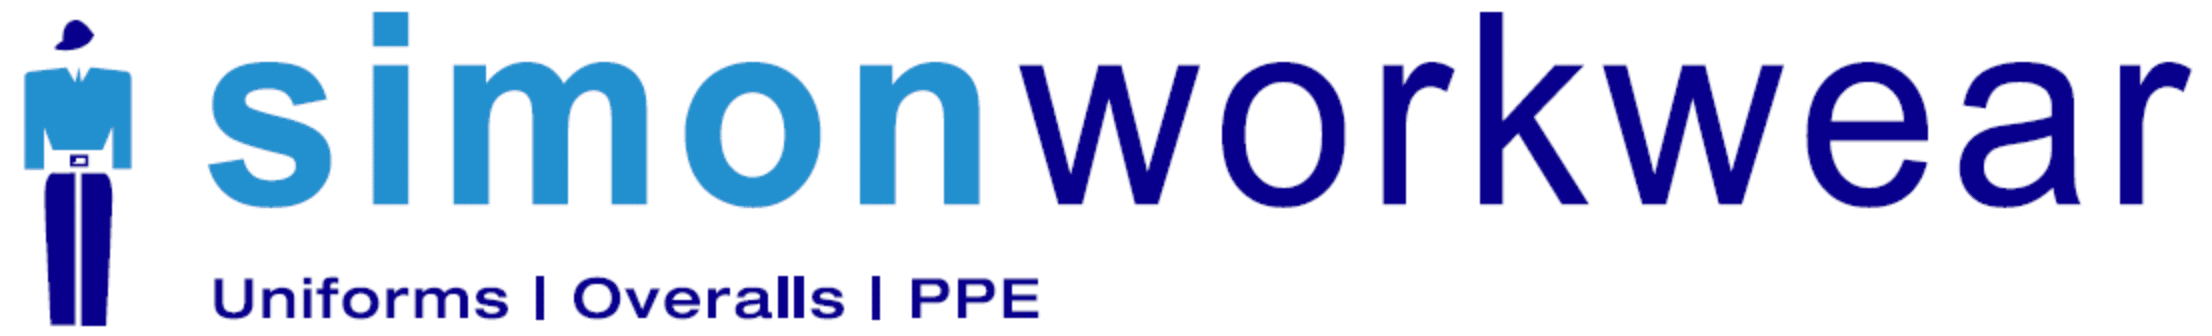 Simon workwear logo